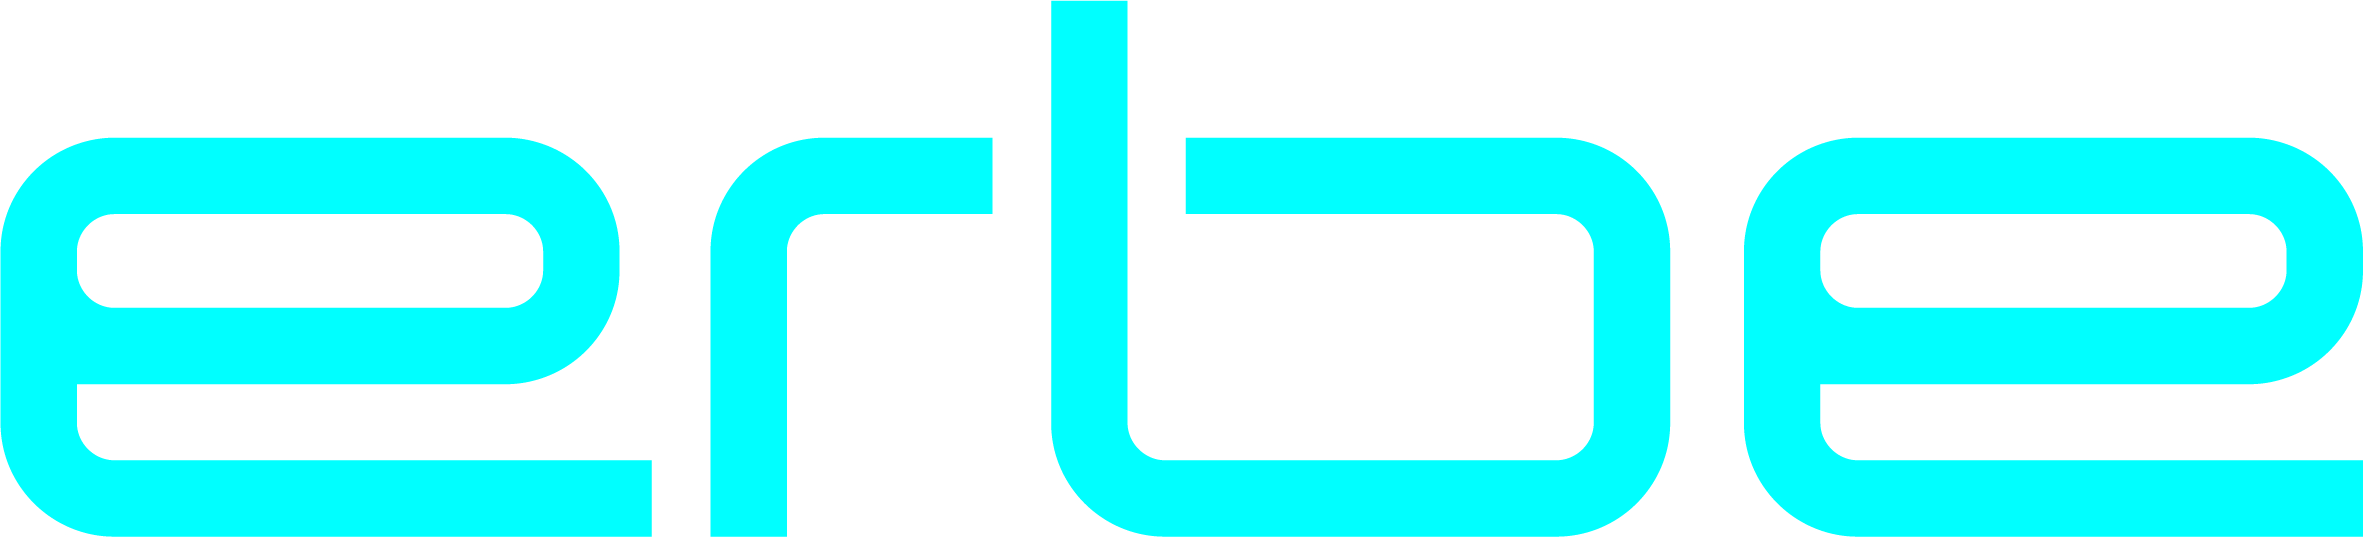 Erbe Logo 4c 1 logo